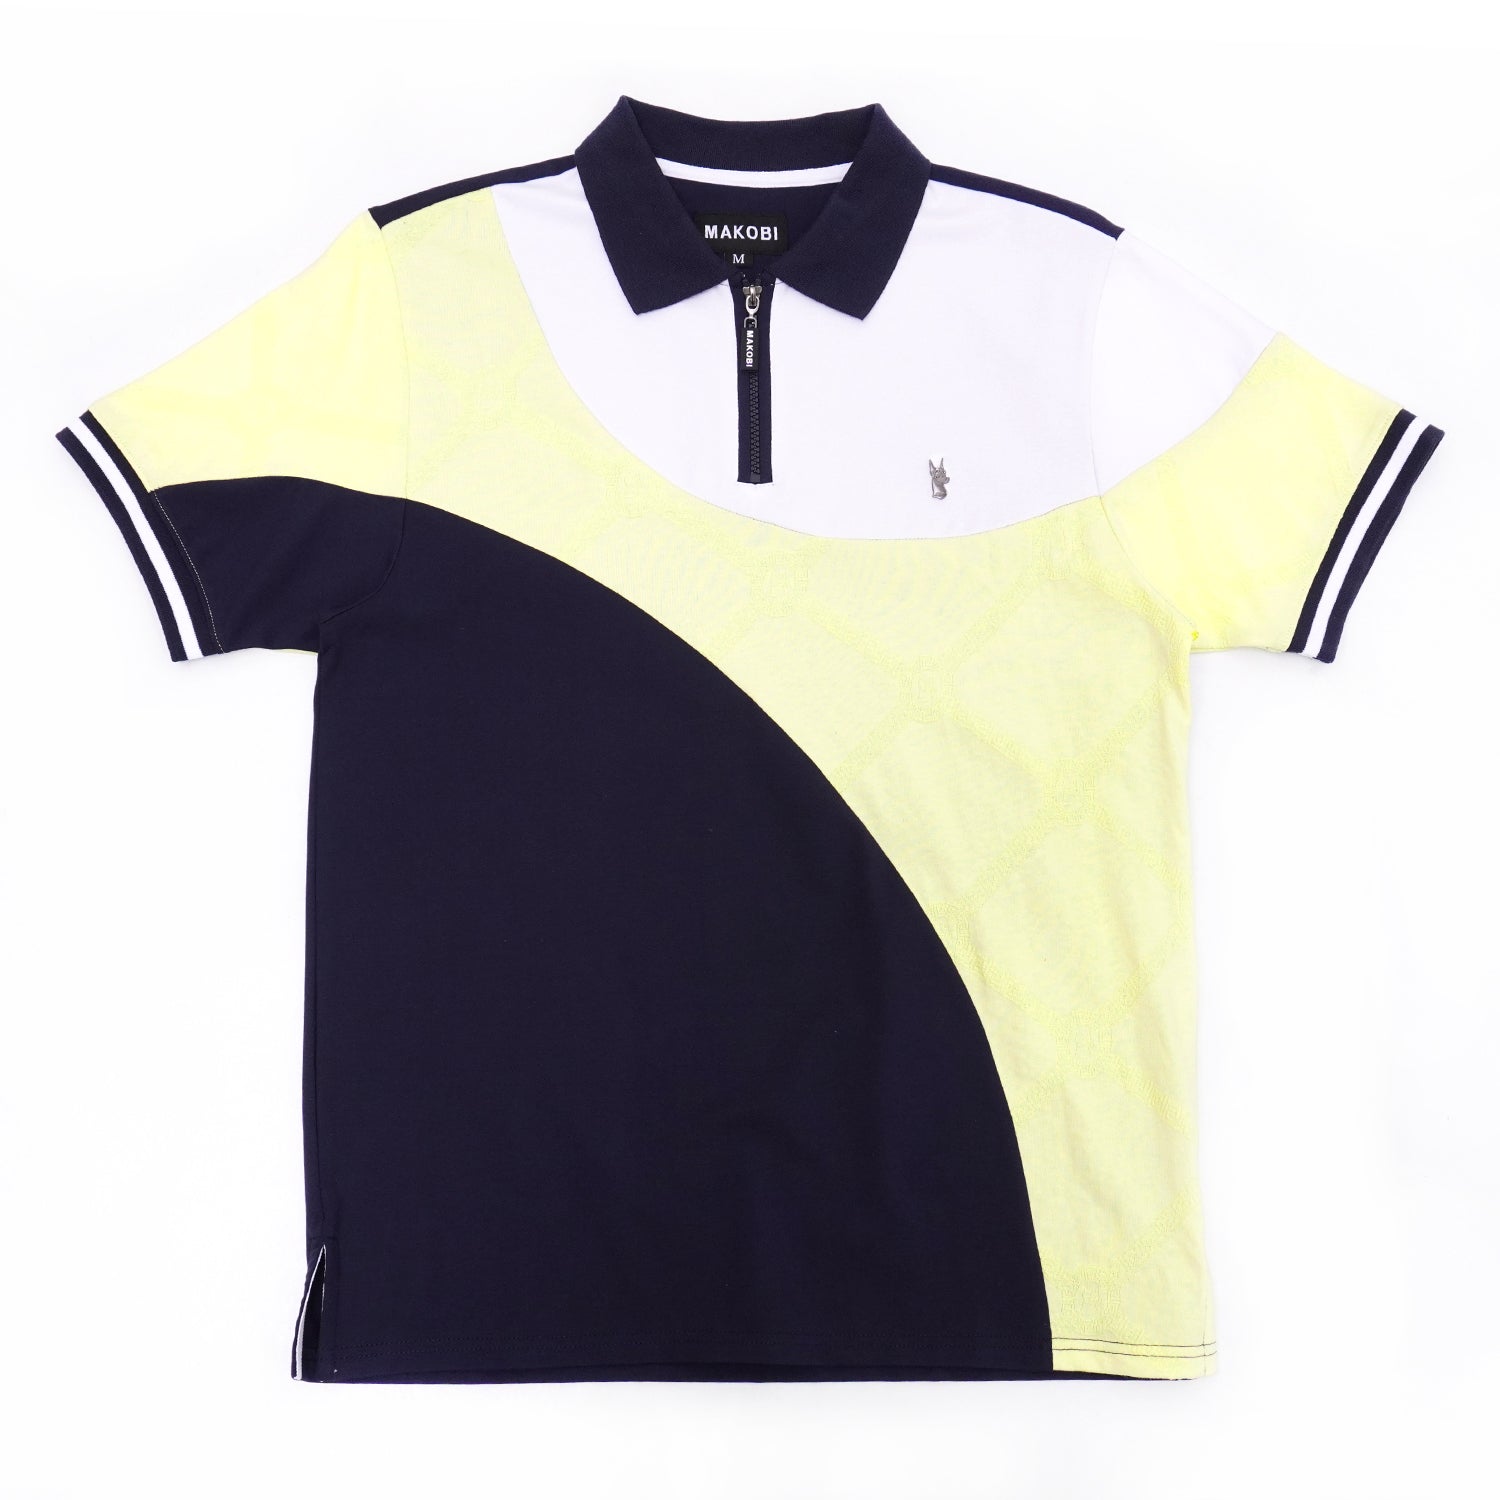 تی شرت پولو مونوگرام M201 - زرد